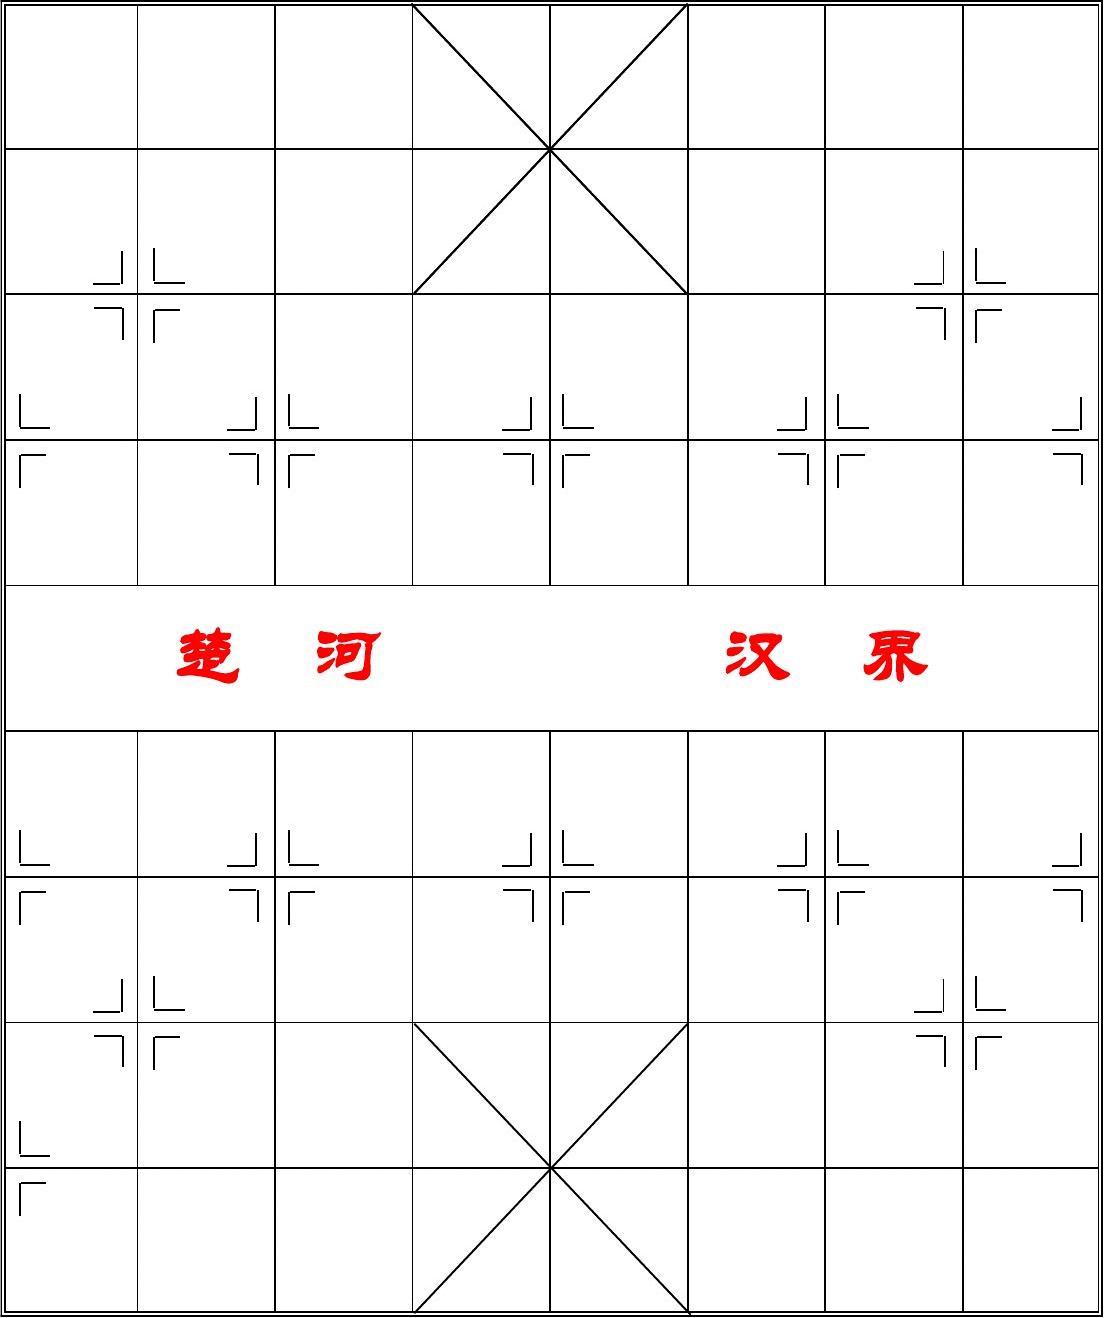 中国象棋棋盘(A3打印版)